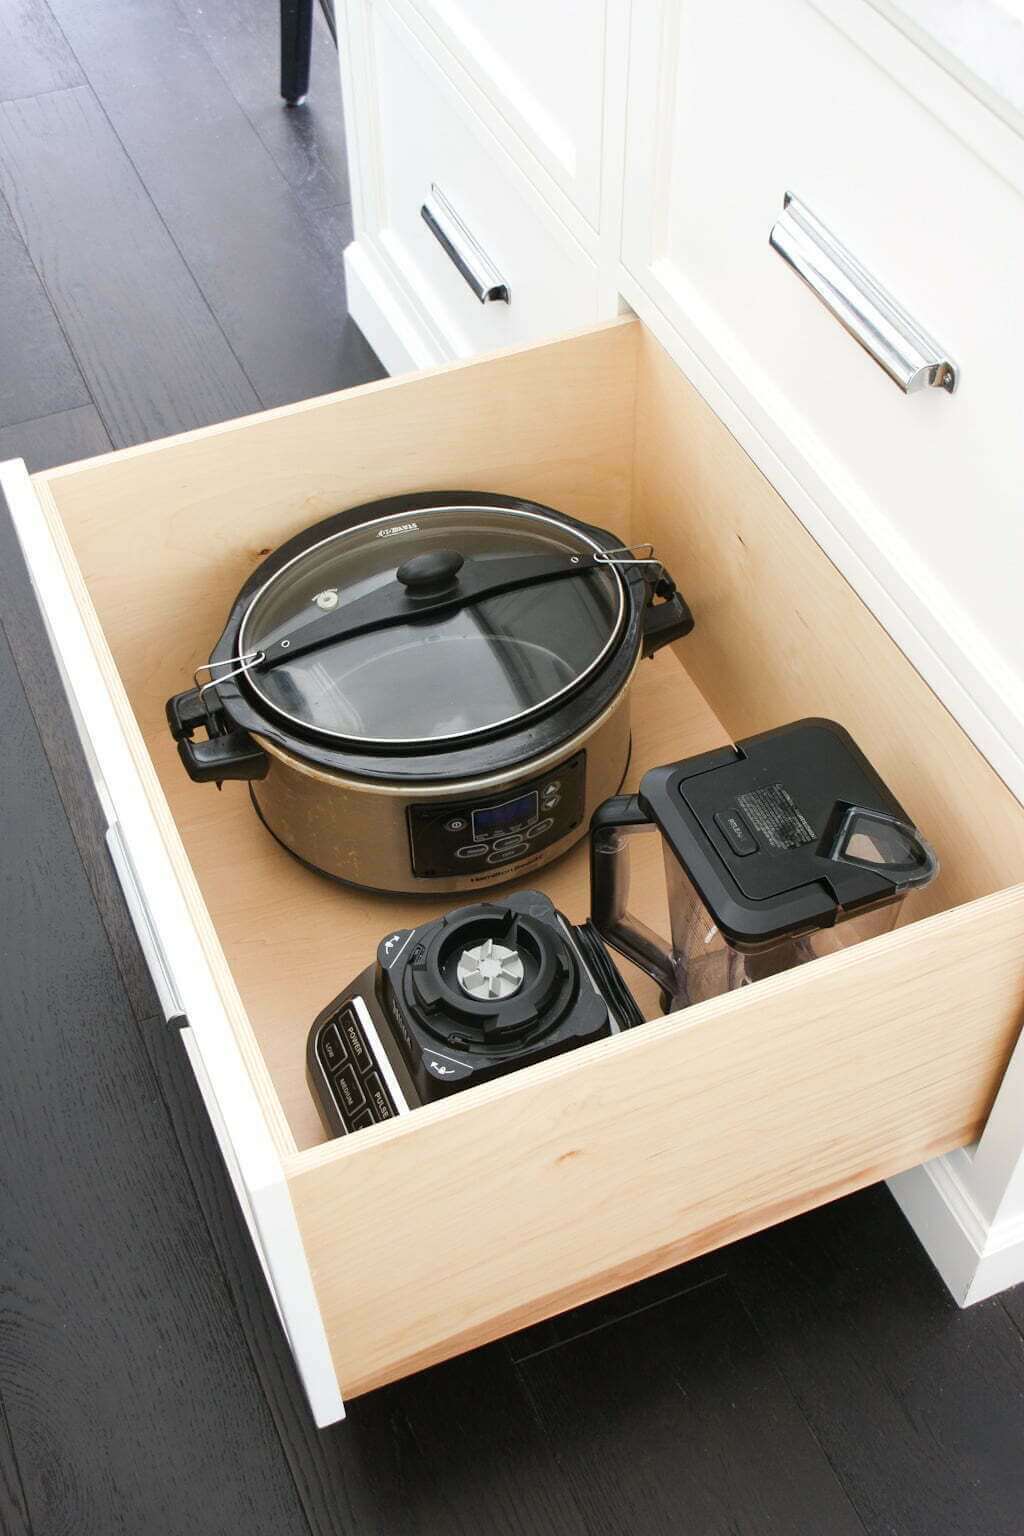 kitchen organization hack with appliances in kitchen drawer storage